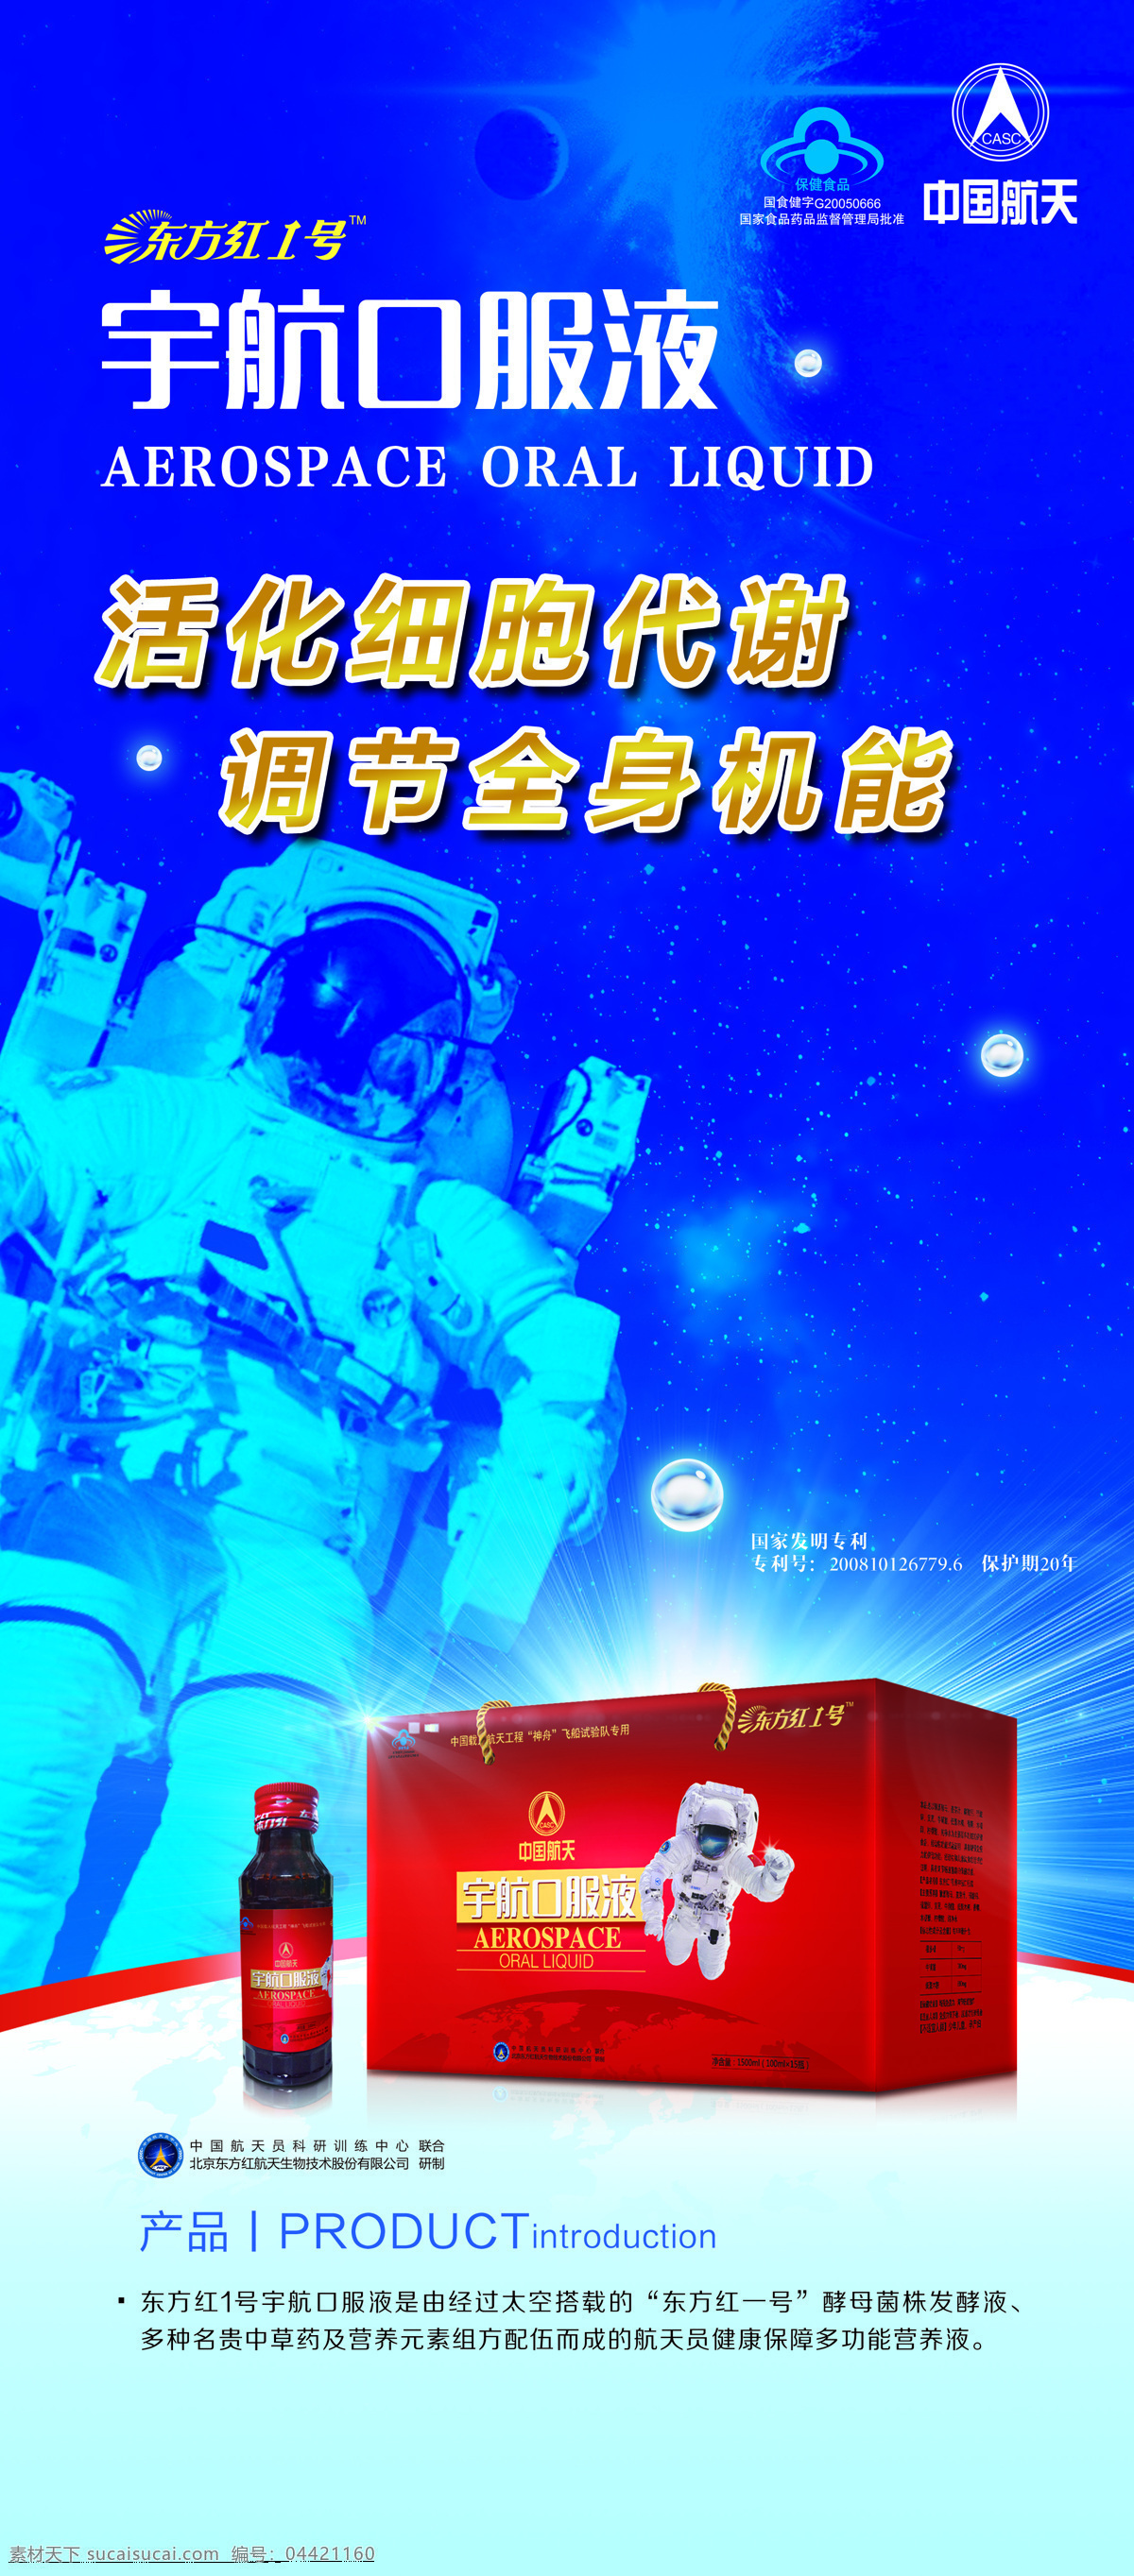 中国航天 东方红 东方红1号 口报液 航天展架 宇航口服液 保健品海报